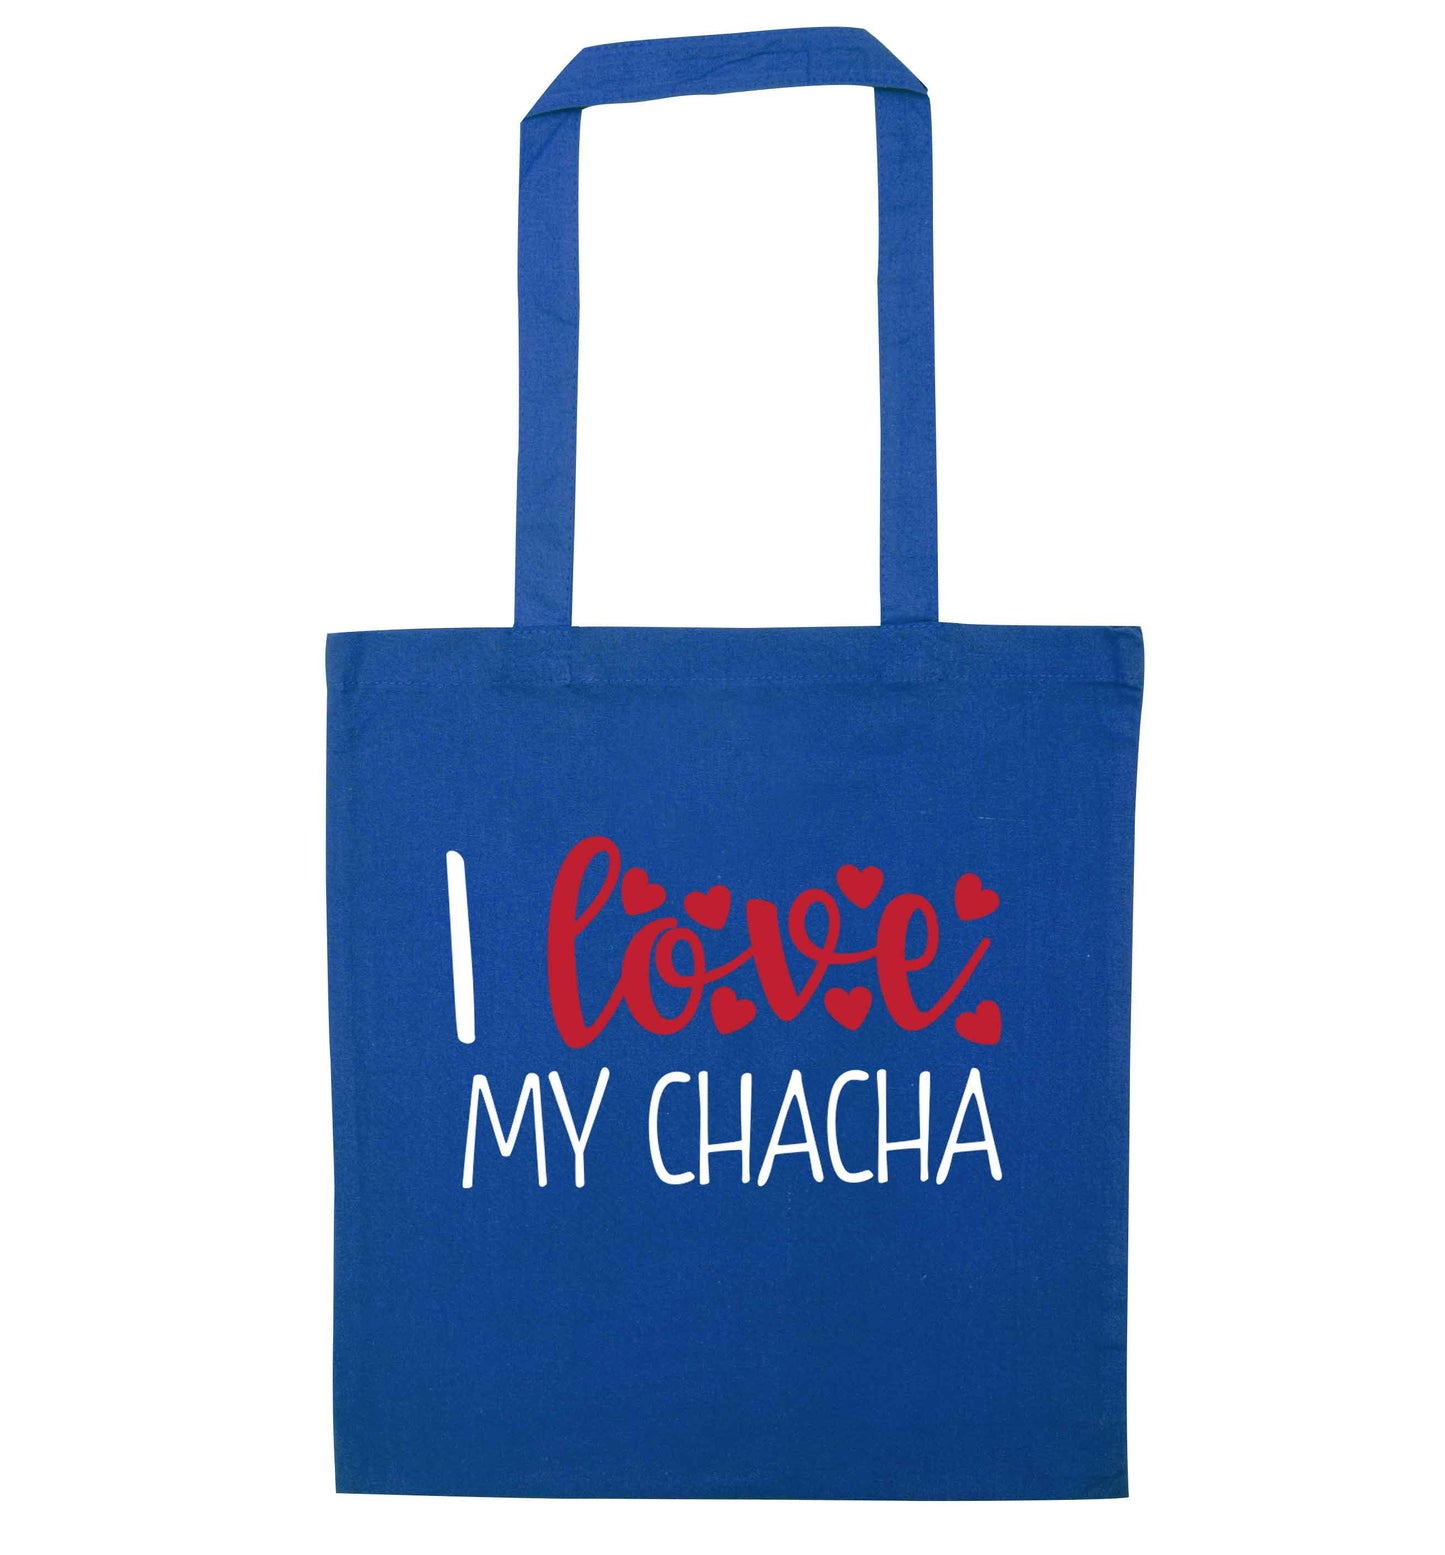 I love my chacha blue tote bag